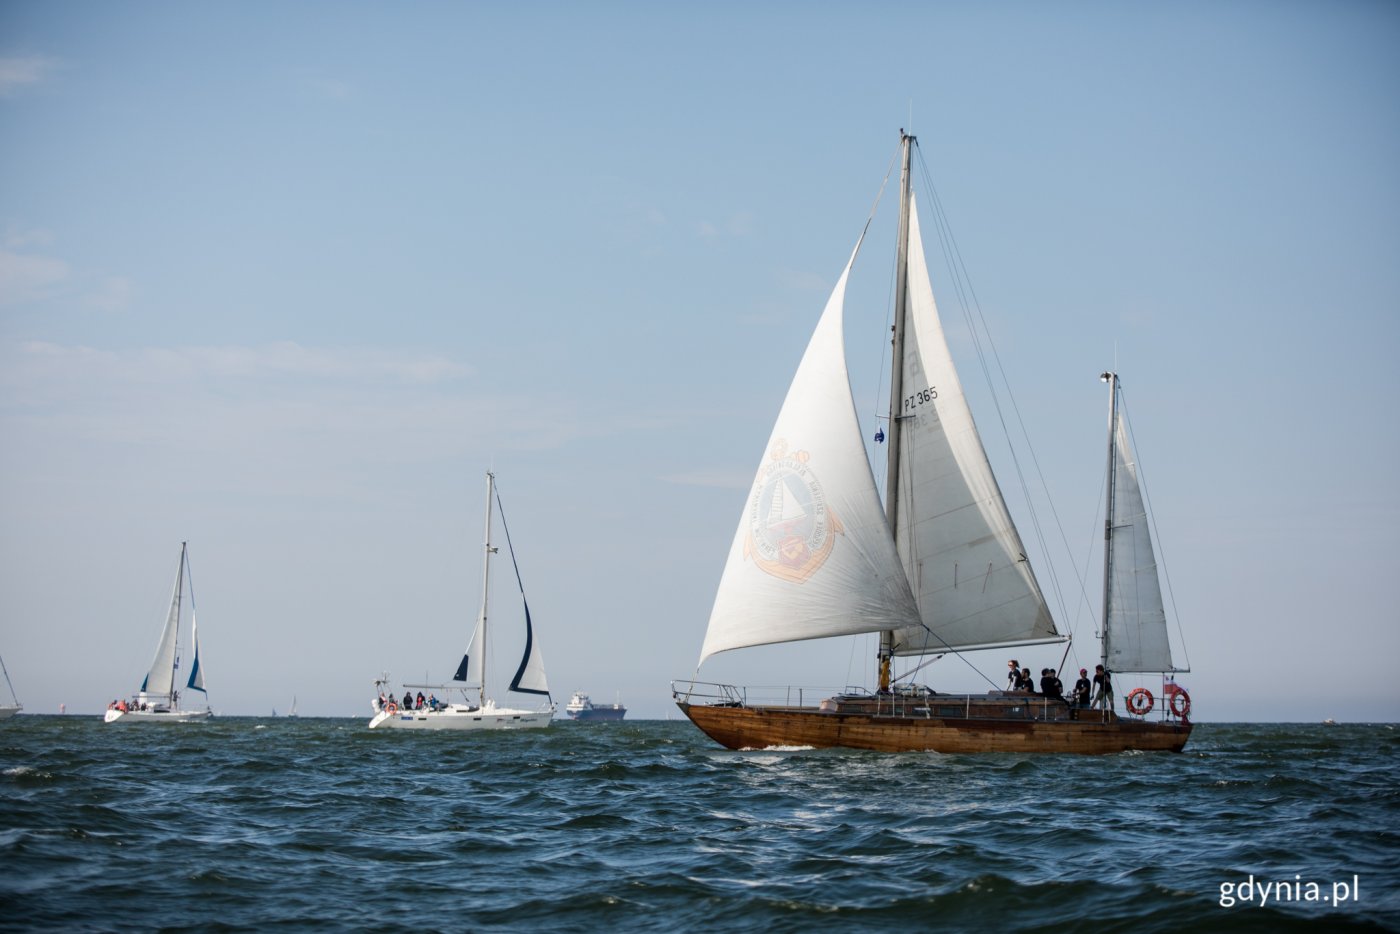 Otwarcie sezonu żeglarskiego w Gdyni łączy się m.in. z obchodami 100-lecia Yacht Klubu Polskiego oraz z 60. rocznicą reaktywacji JKMW „Kotwica” Gdynia.